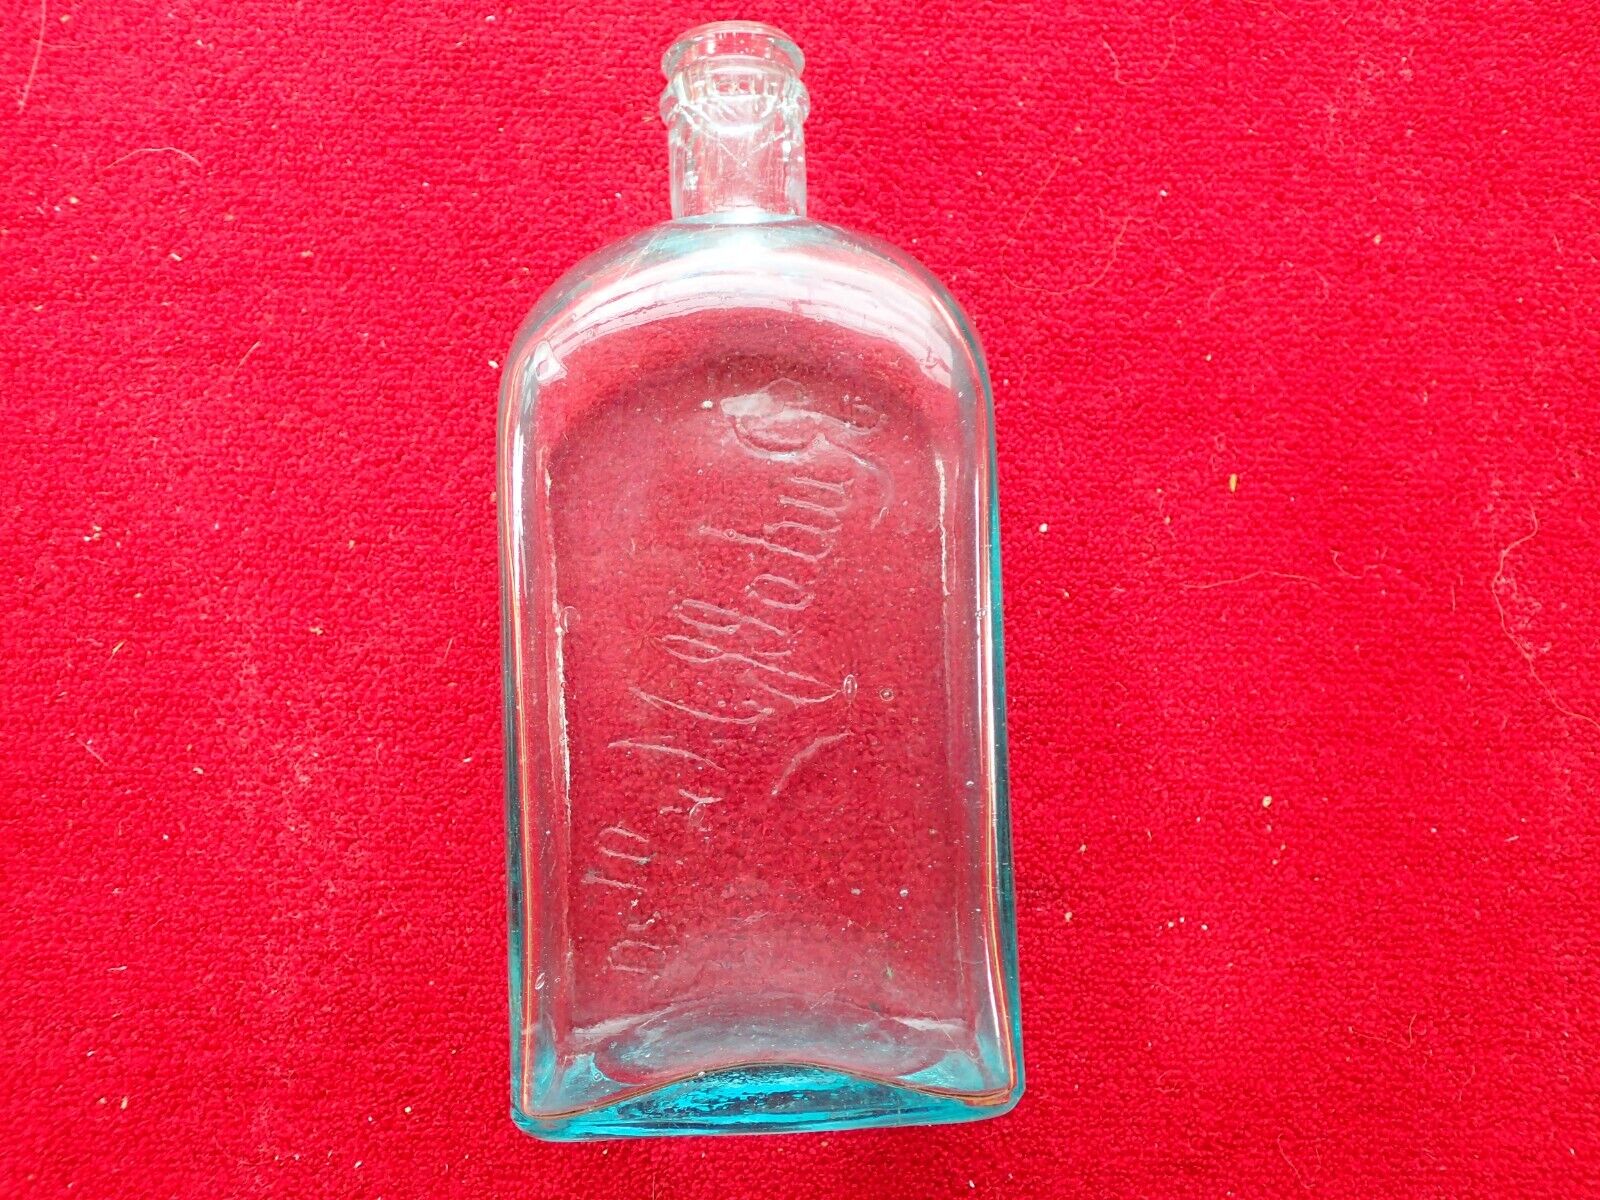 Vintage Rudolf Melka Teutonia Aromatischer Tonic Medicine Bottle Без бренда - фотография #3